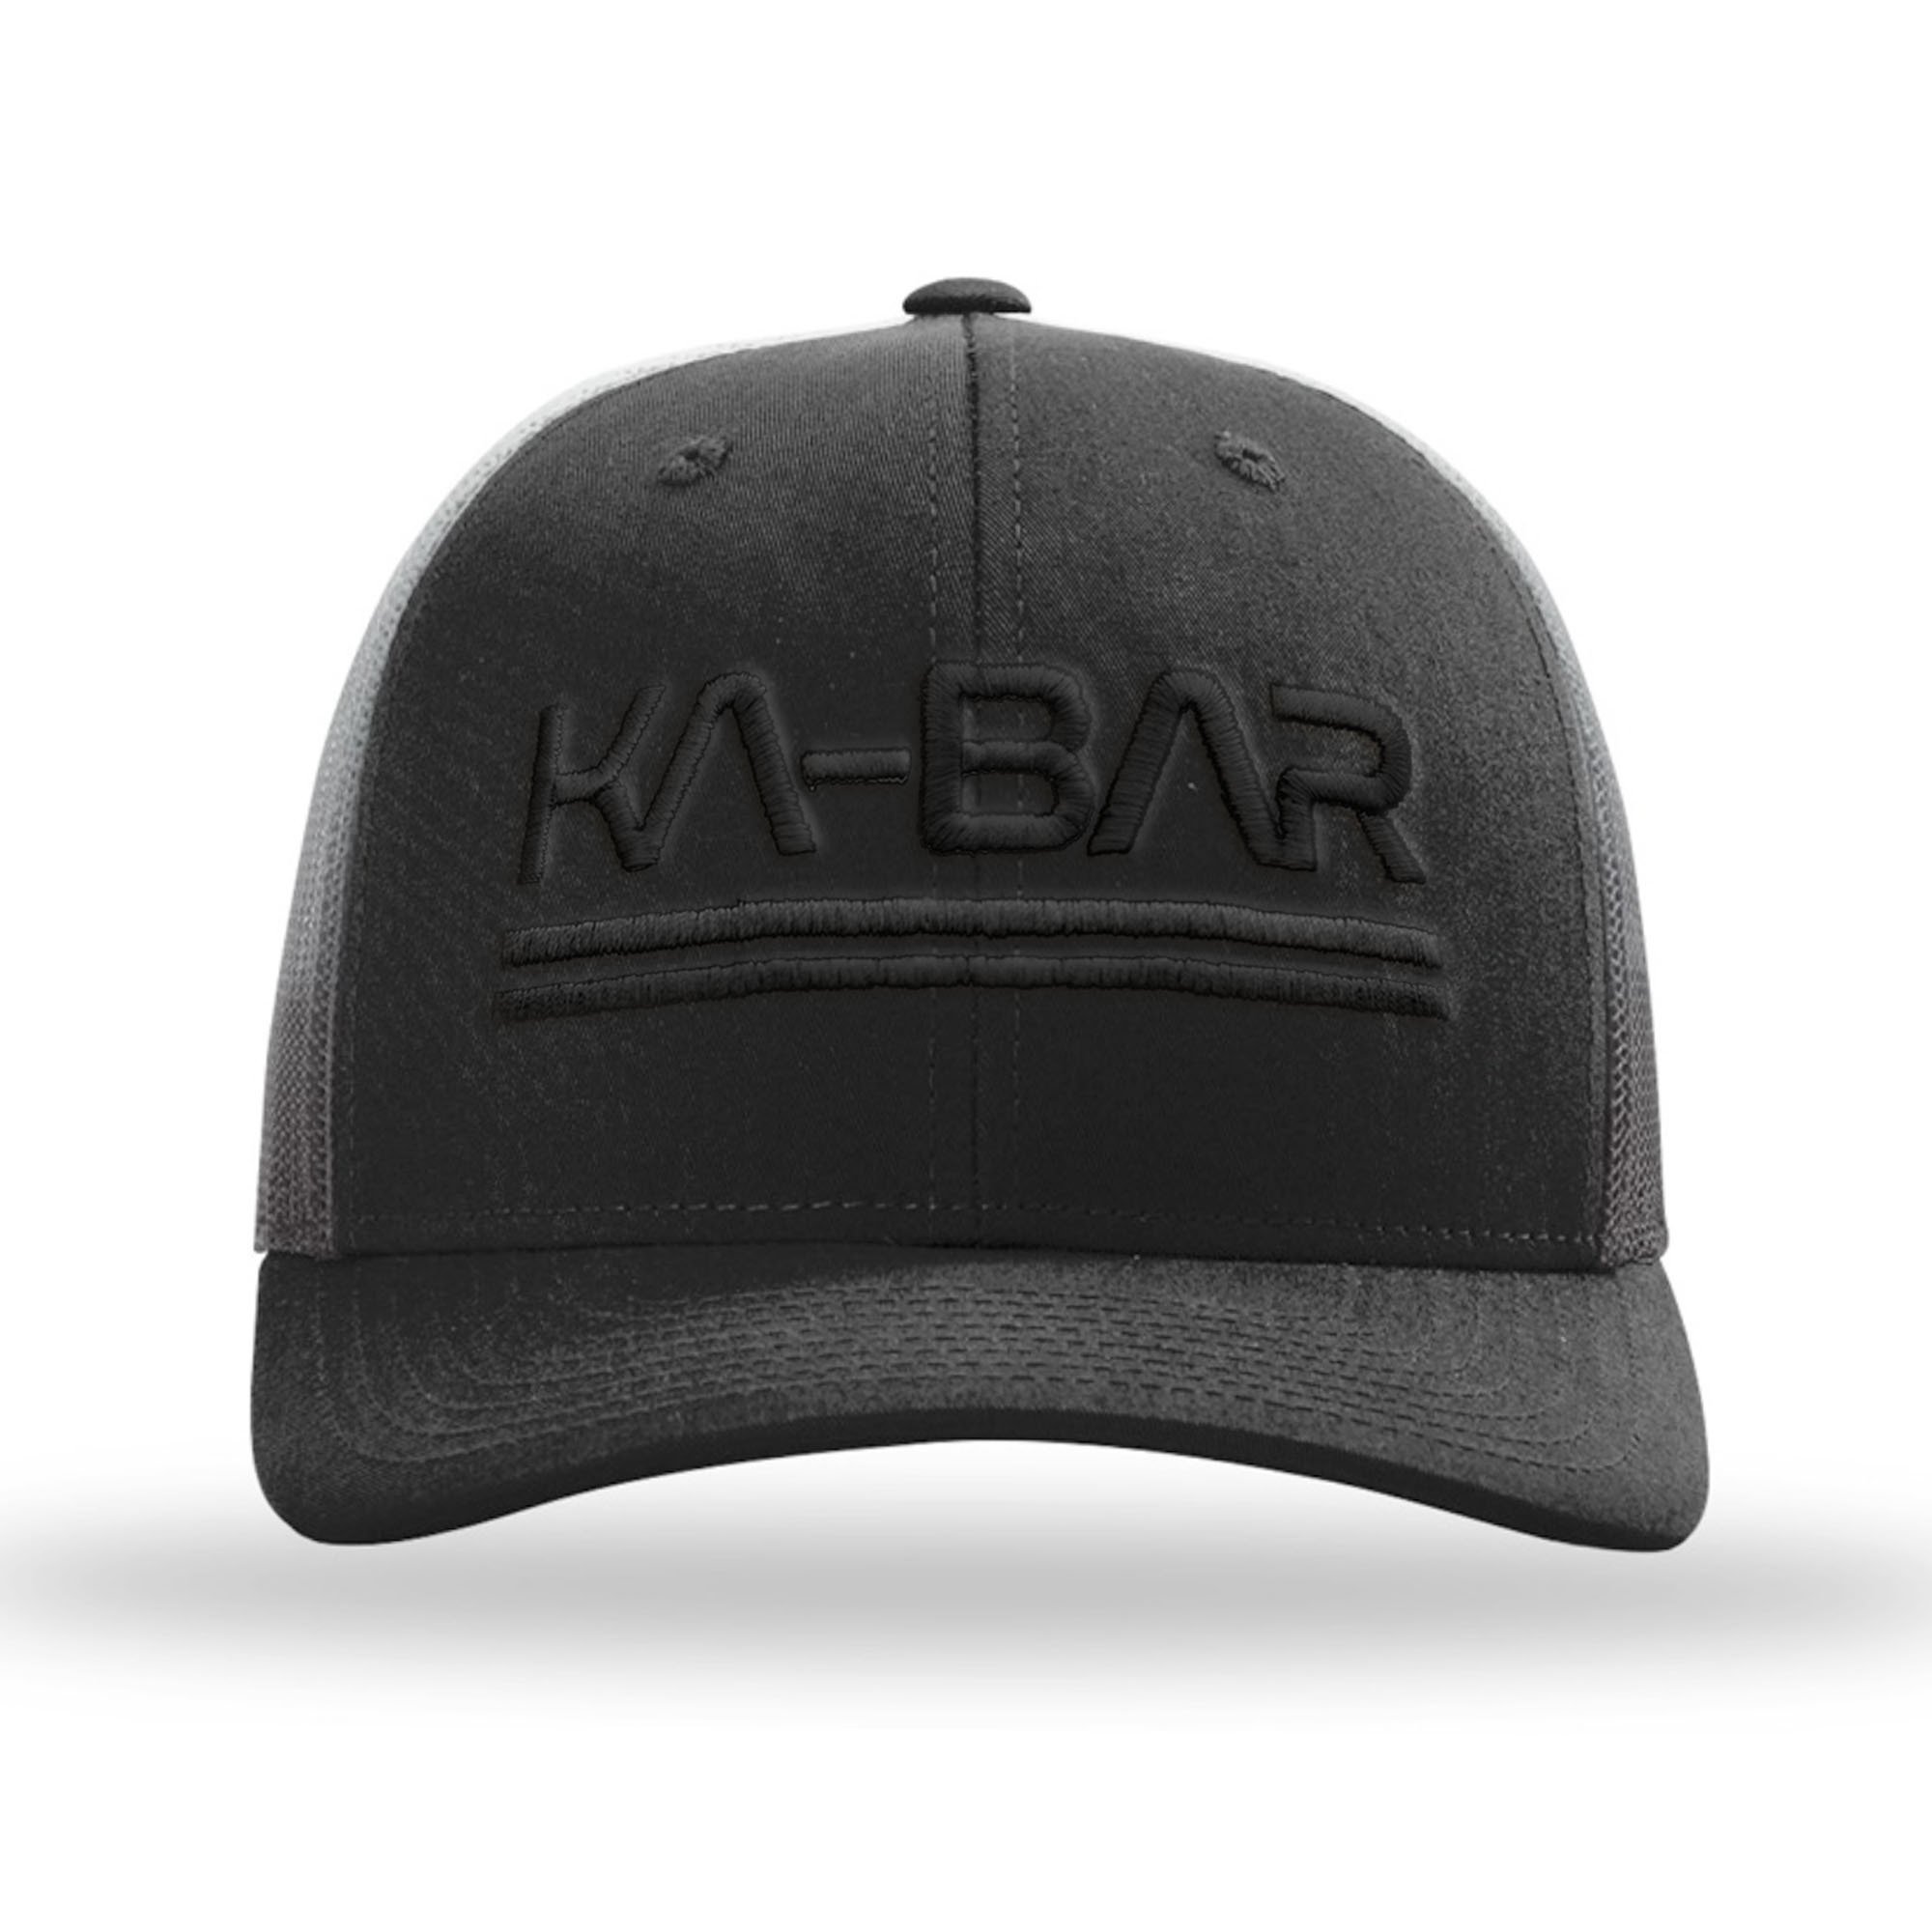 KA-BAR Black Space Hat